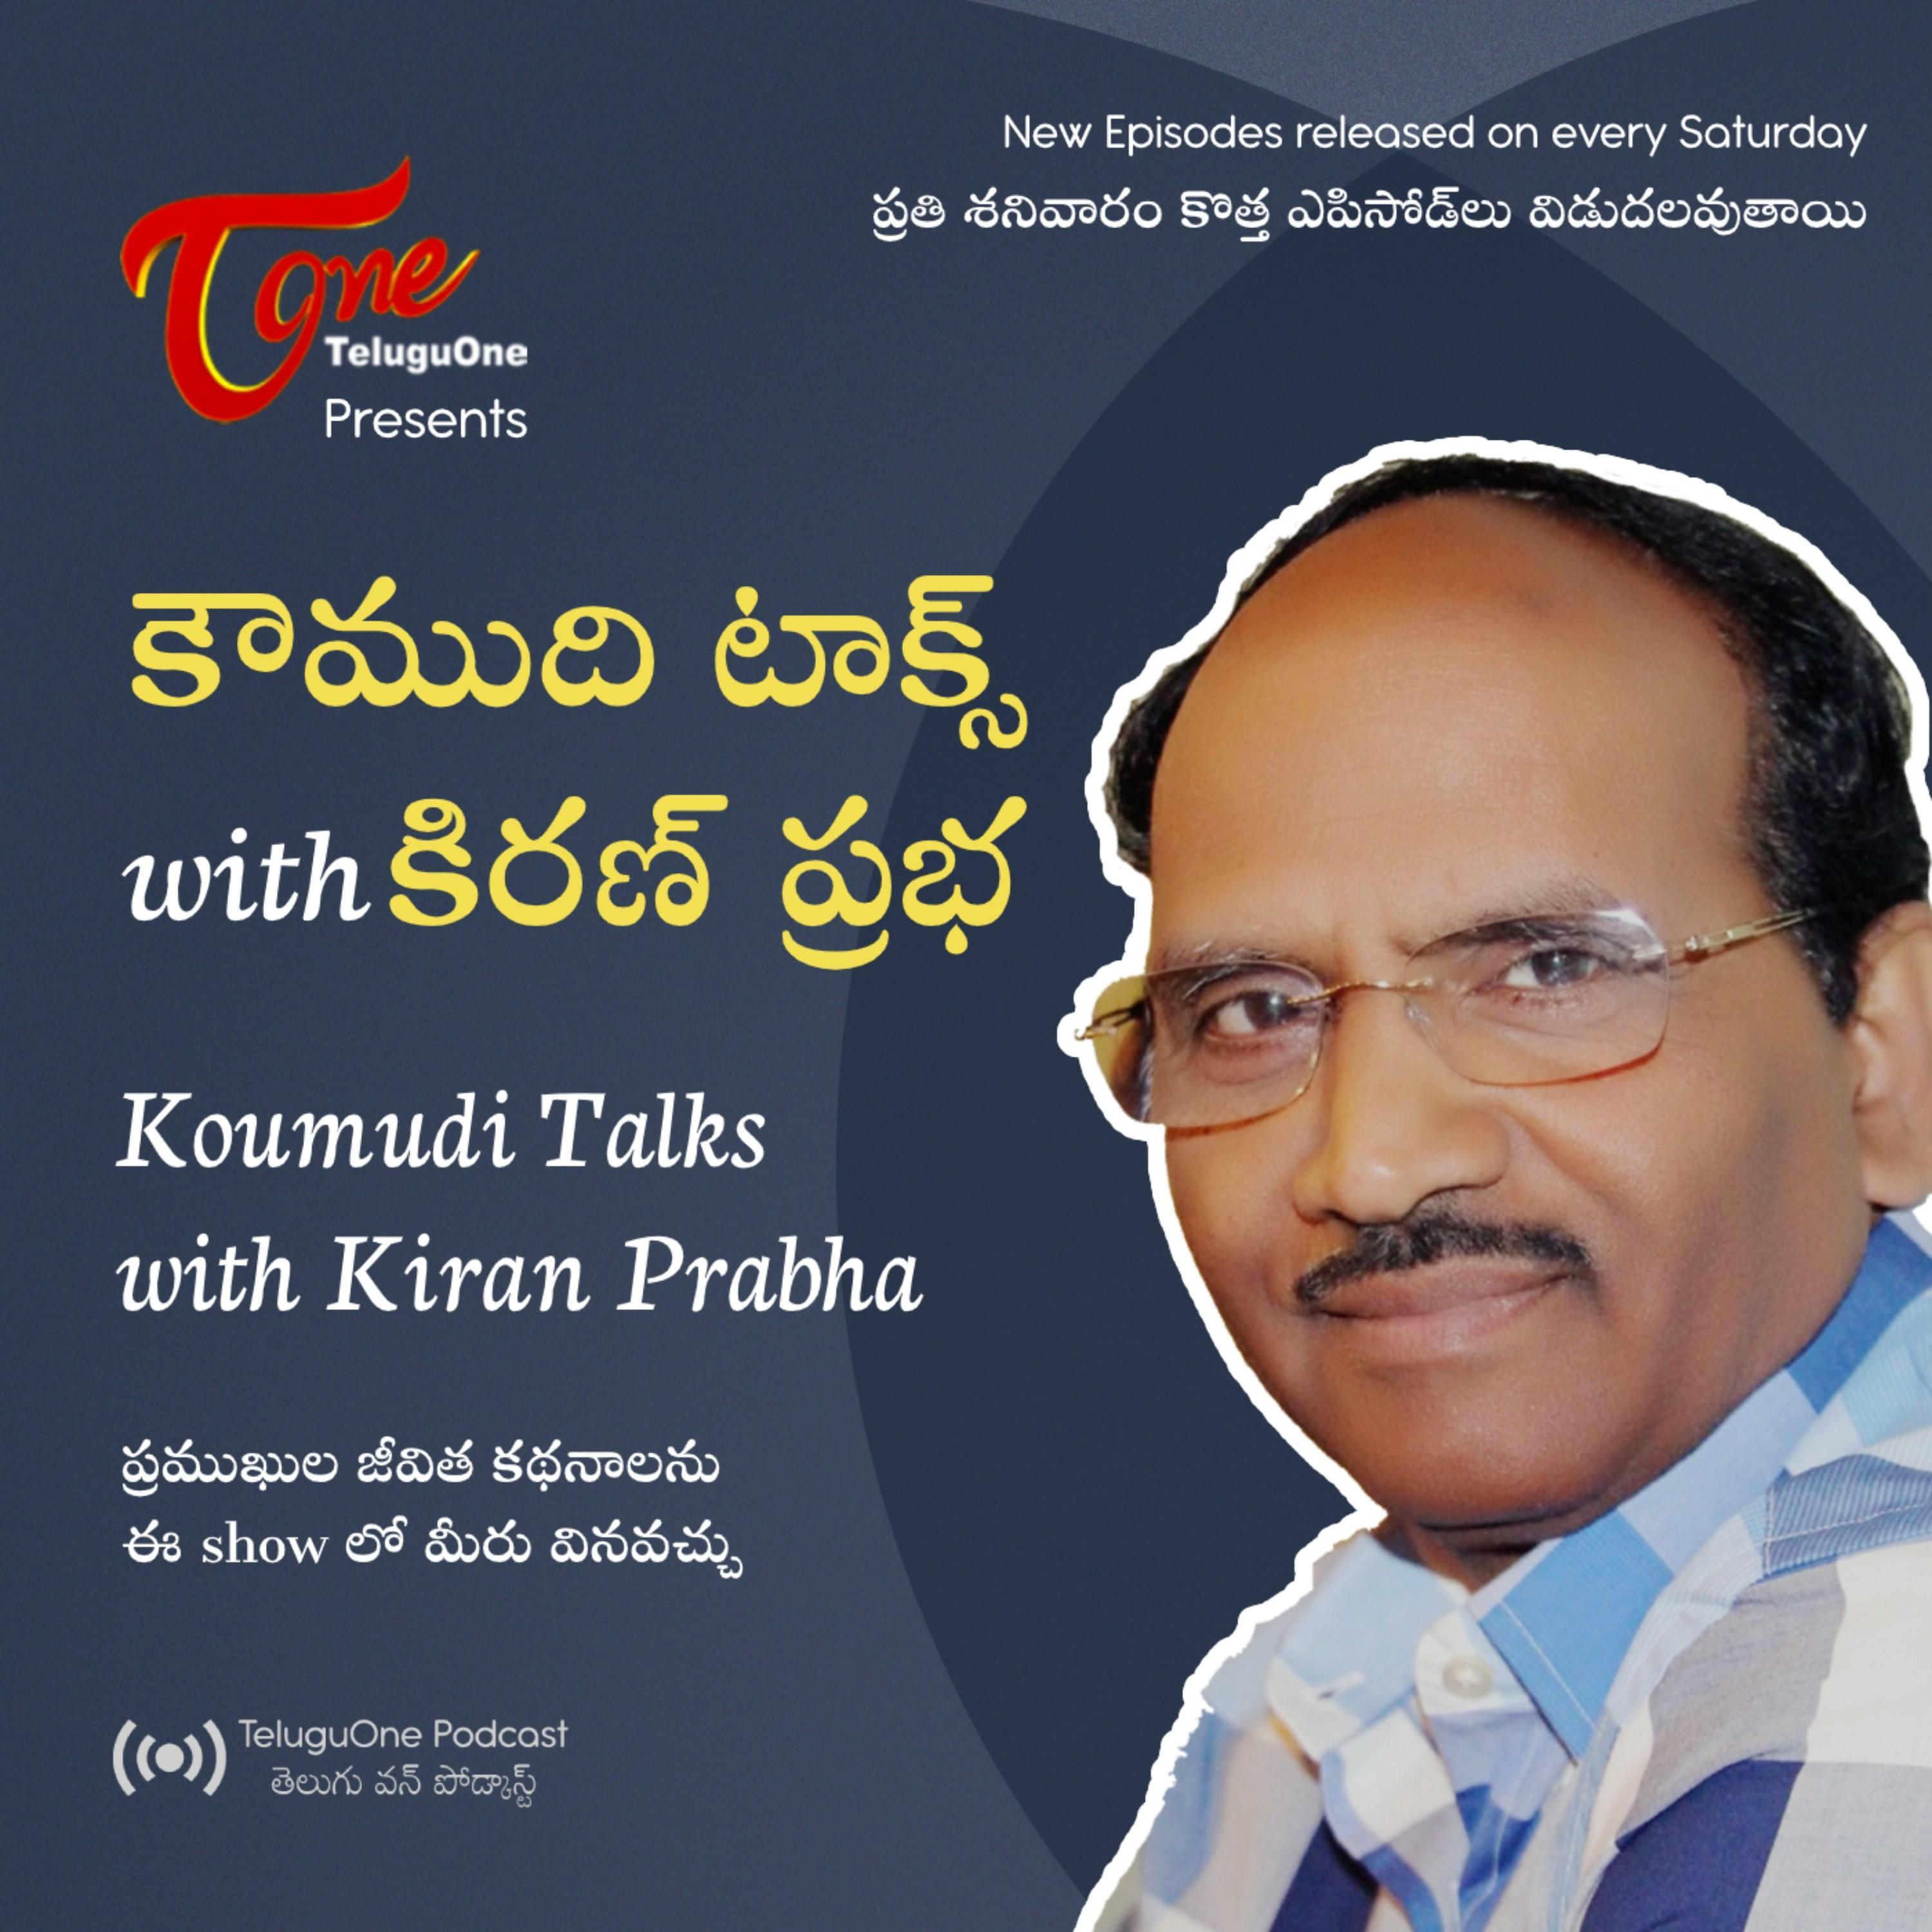 Koumudi Talks with Kiran Prabha